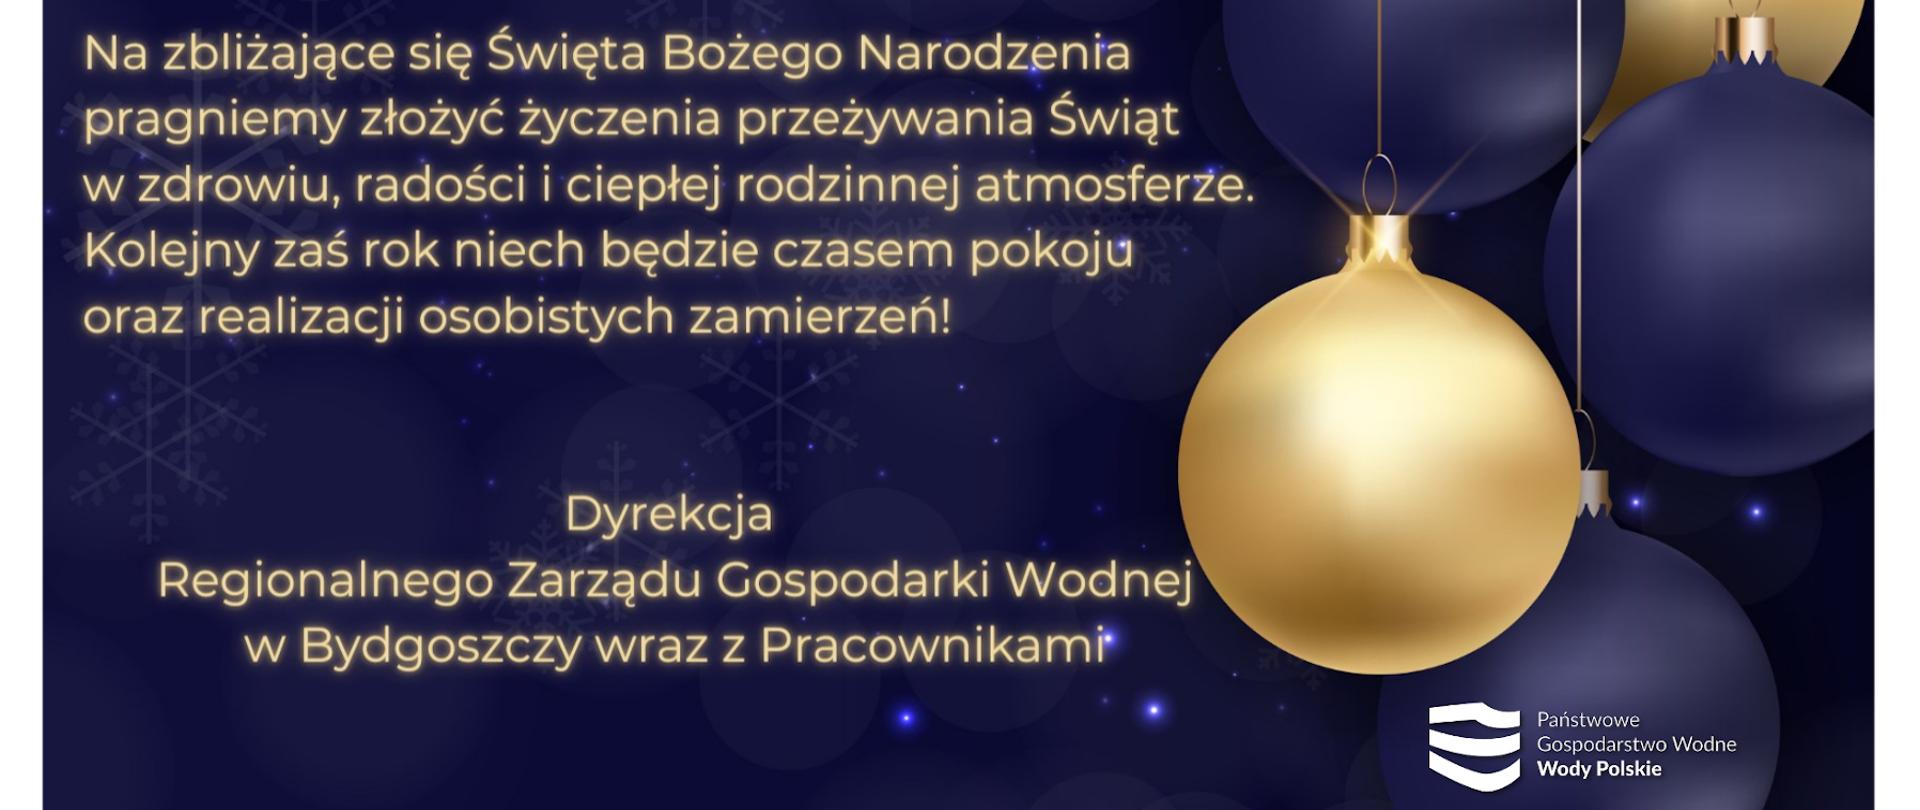 Na tle gwieździstego ciemnego nieba, złotymi literami napisane są życzenia bożonarodzeniowe. Po prawej stronie granatowe i złote bombki oraz logo Wód Polskich. 